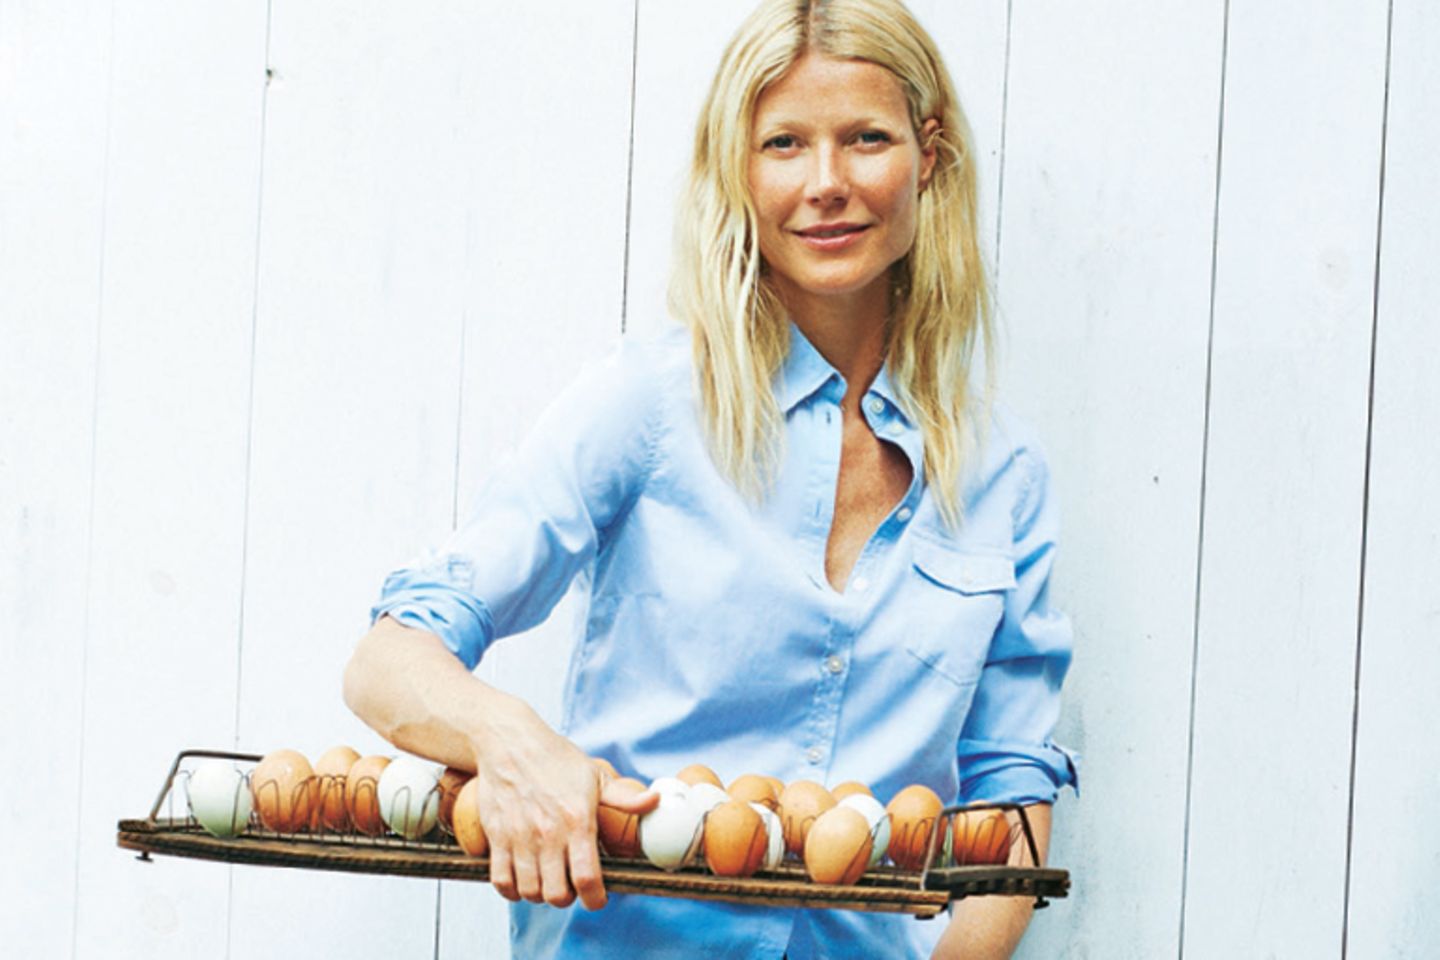 Countrygirl: Sooft sie kann, kauft Gwyneth Paltrow frische Eier direkt beim Farmer